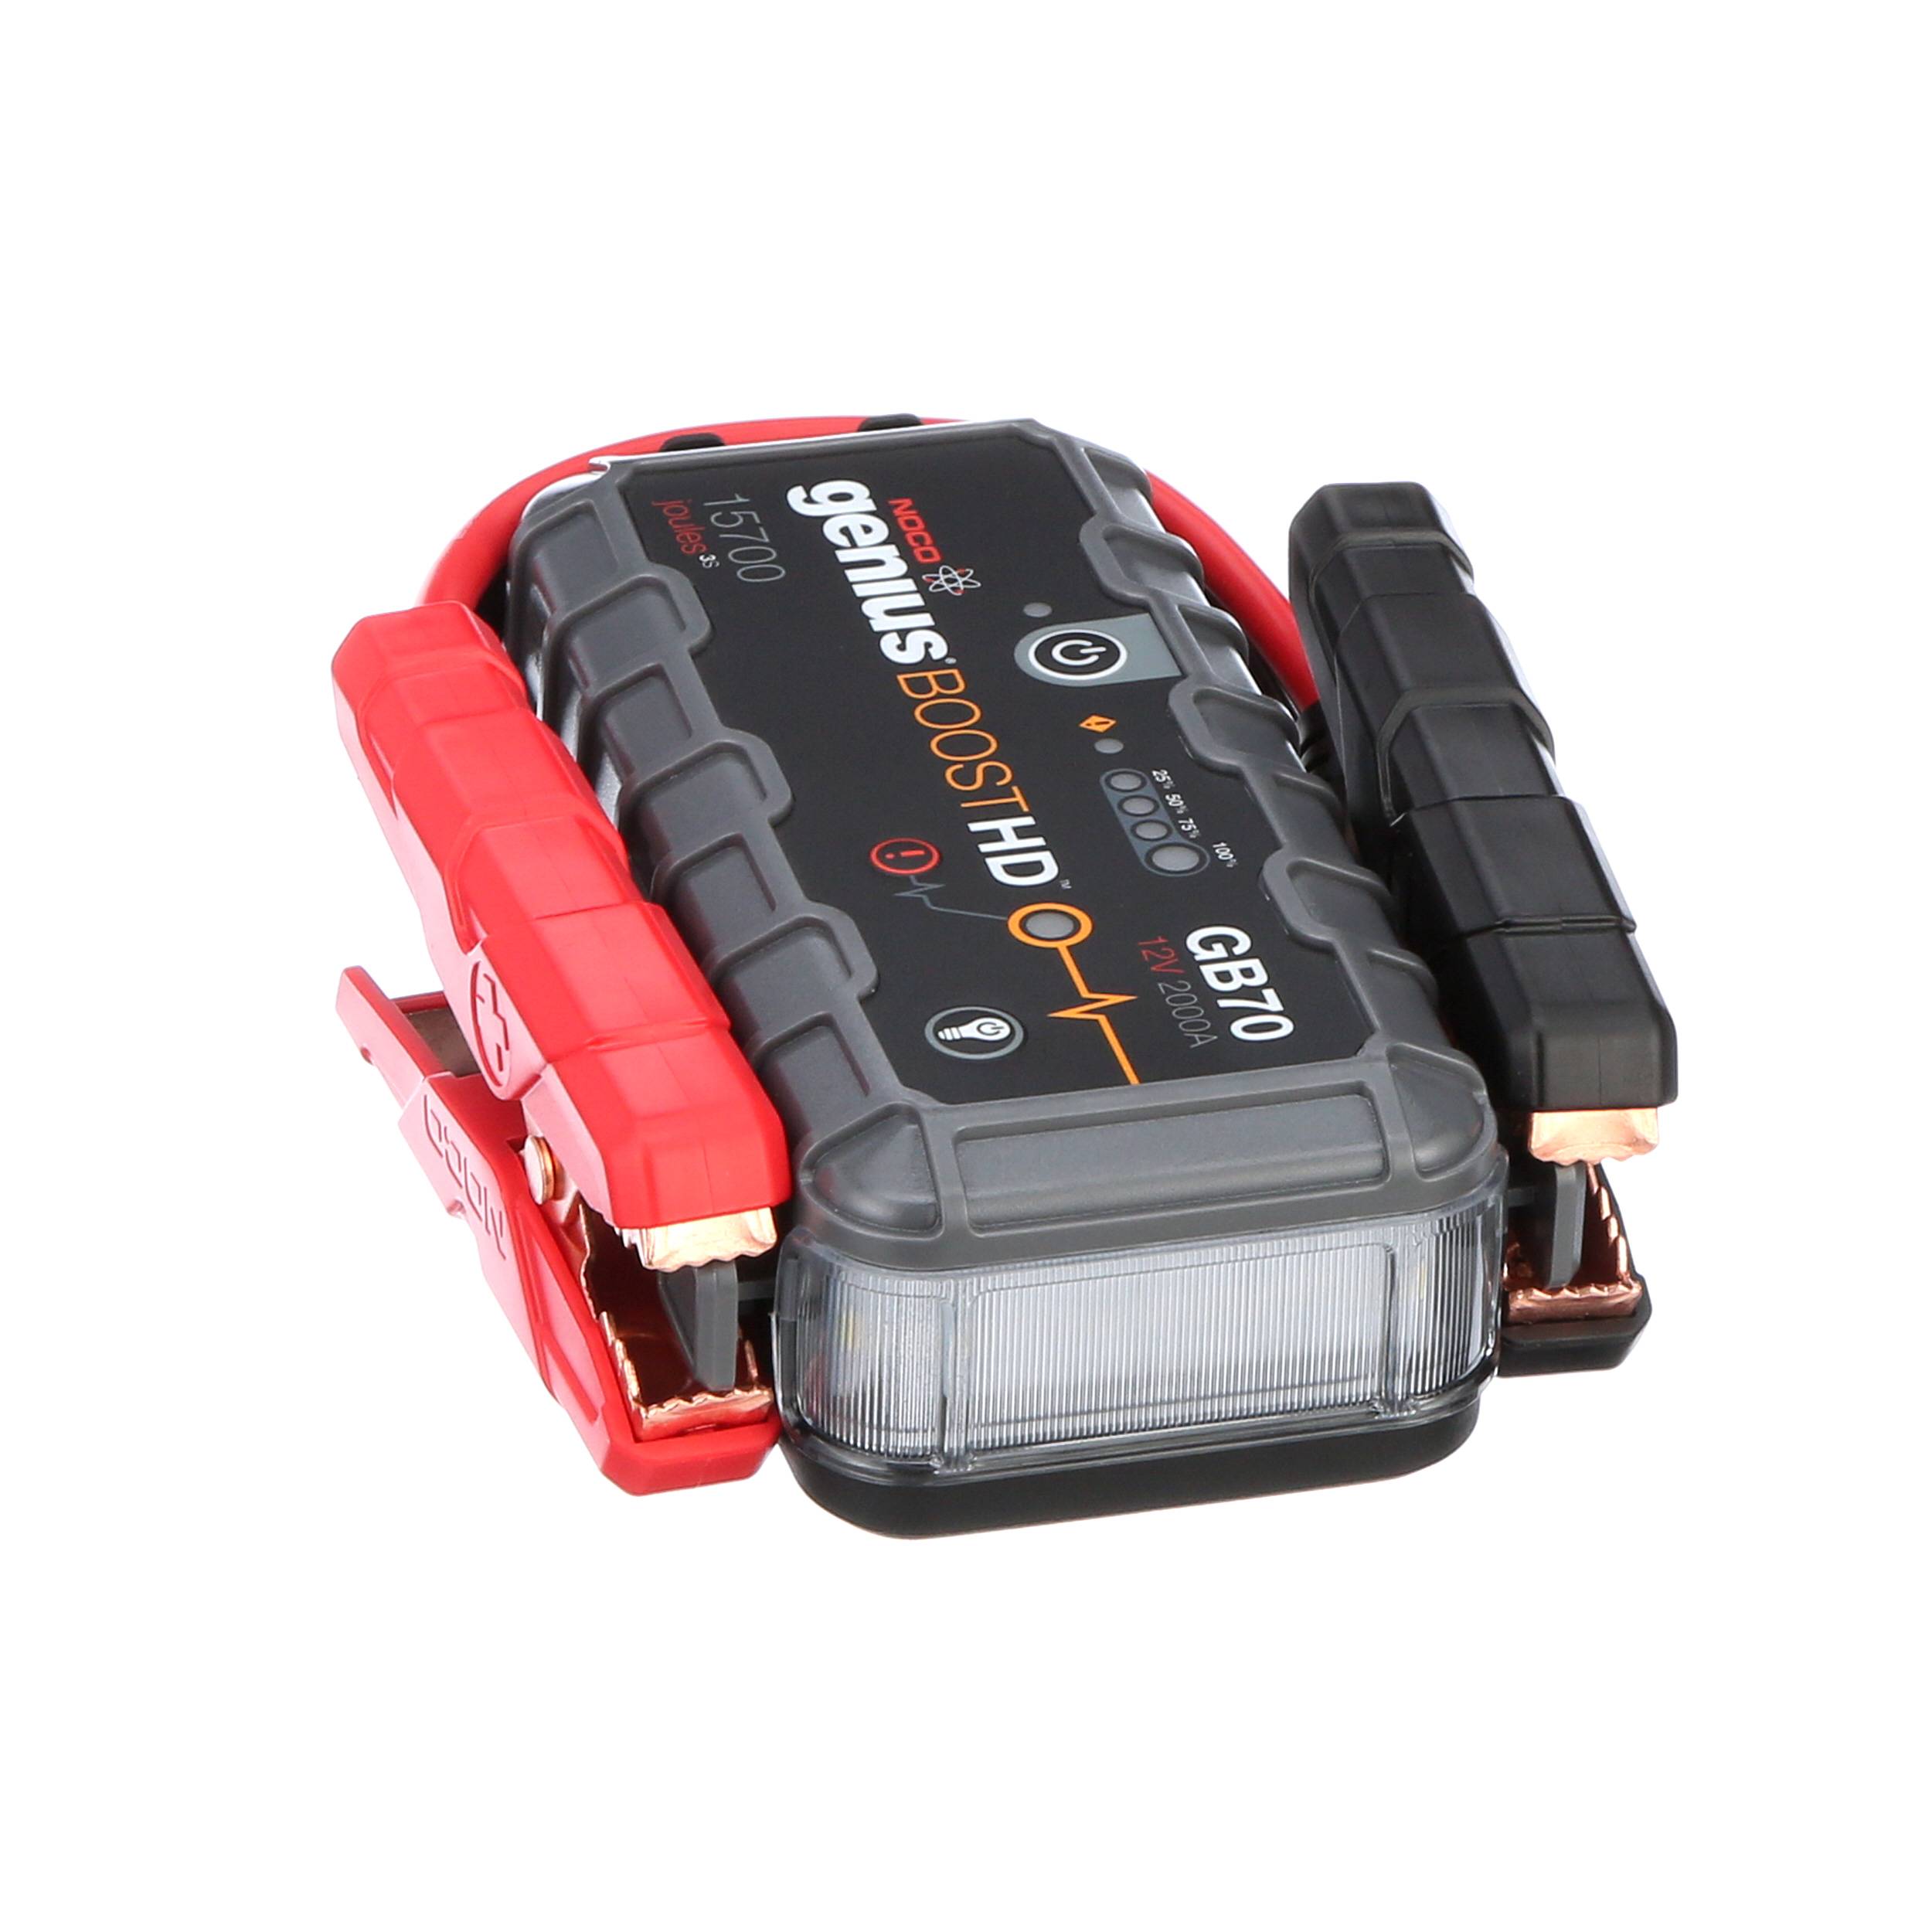 Aproca Hard Storage Travel Case Bag for Noco Boost HD GB70 2000 Amp 12V  UltraSafe Lithium Jump Starter